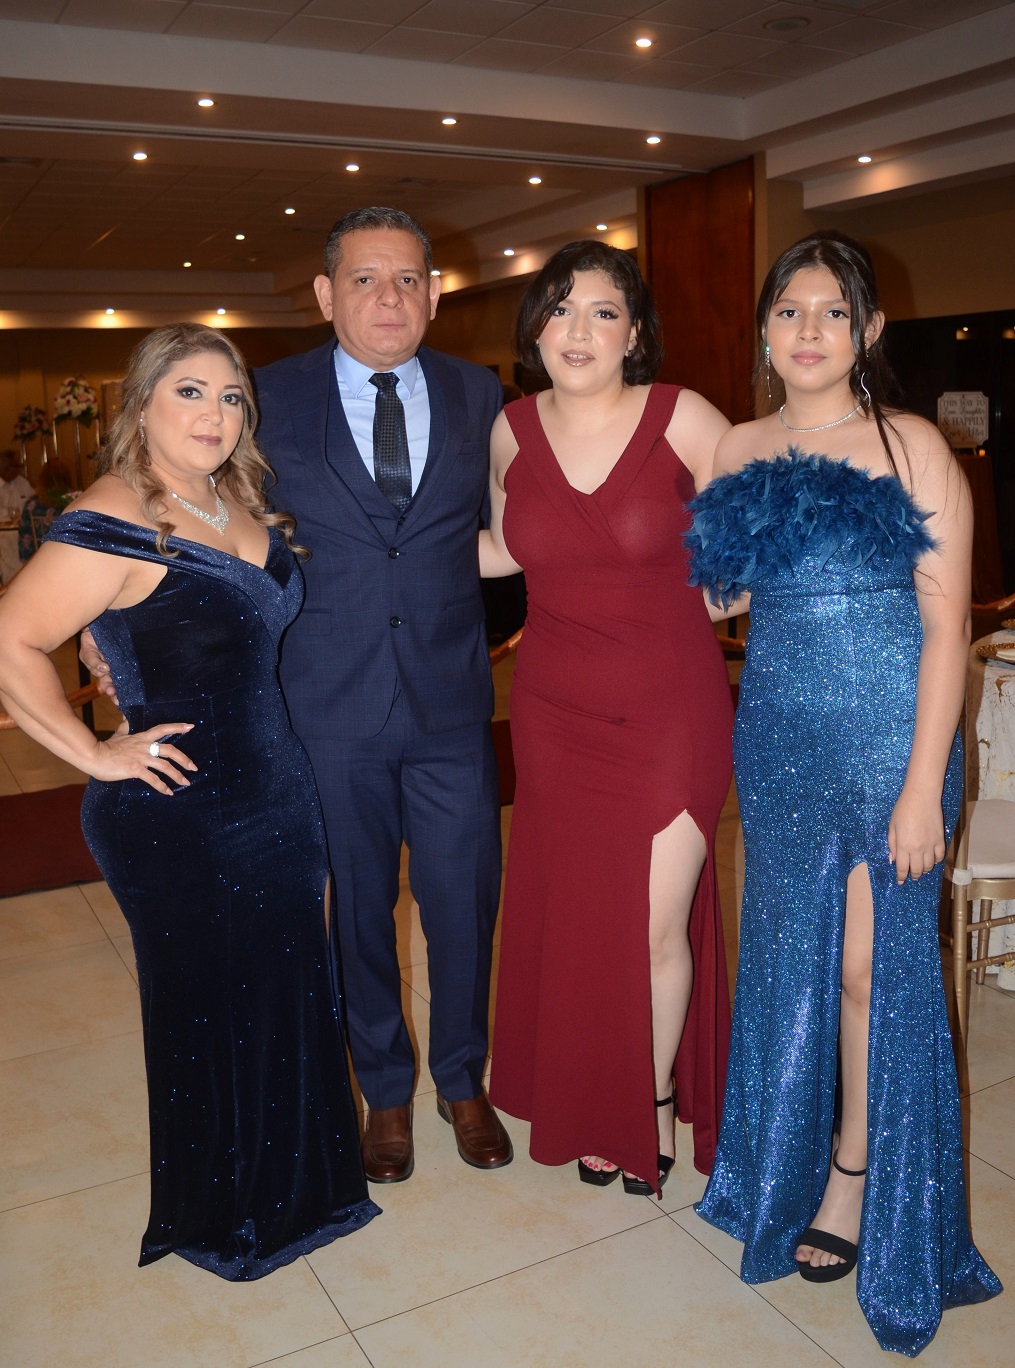 La boda de Geonany Leiva y Fernandina Zerón…¡de inspiración clásica!